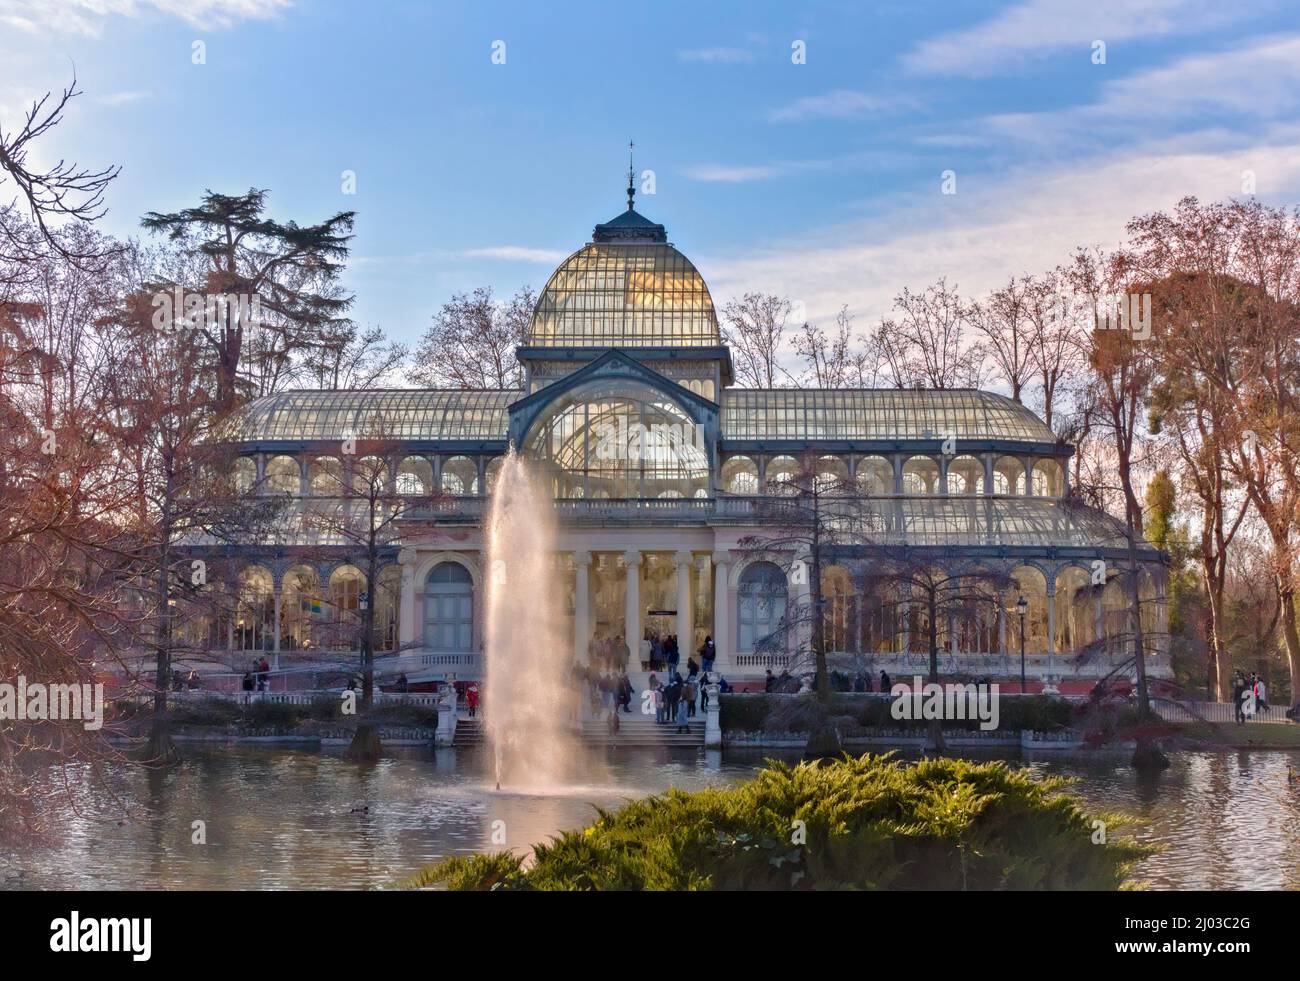 Palacio de Cristal en el Parque del Retiro - Madrid, Spain Stock Photo